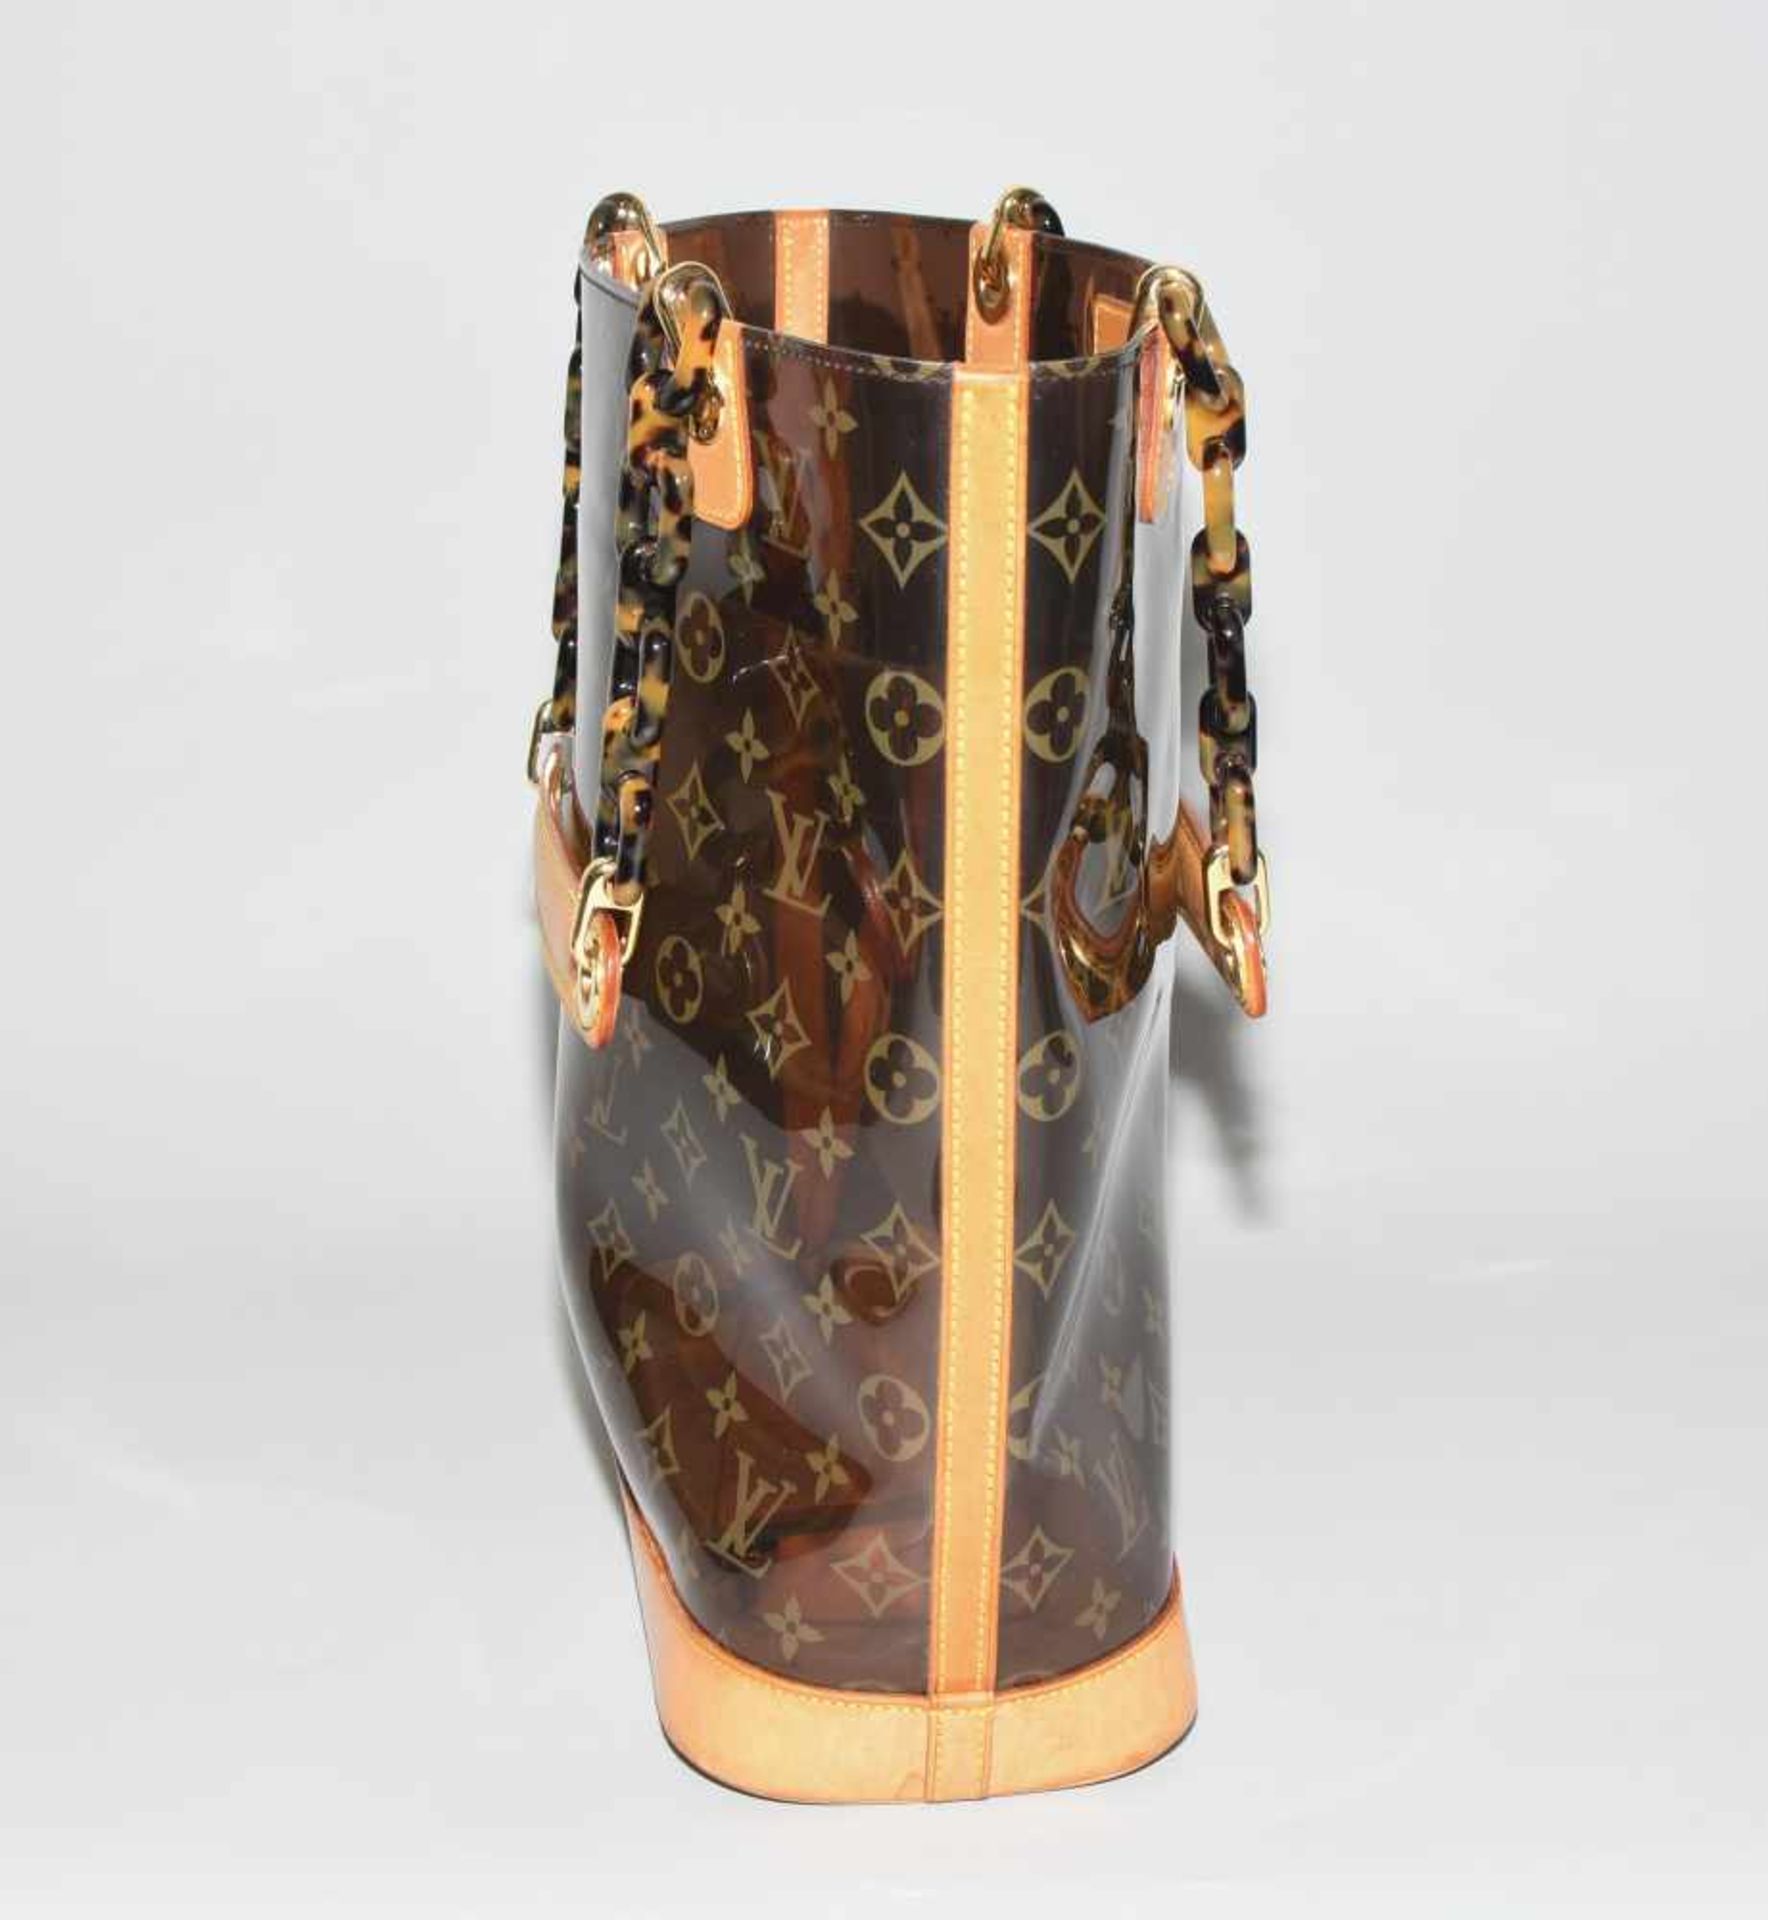 Louis Vuitton, "Ambre sac cabas"Schultertasche aus braunem Vinyl mit klassischem Monogram Muster. - Bild 12 aus 17